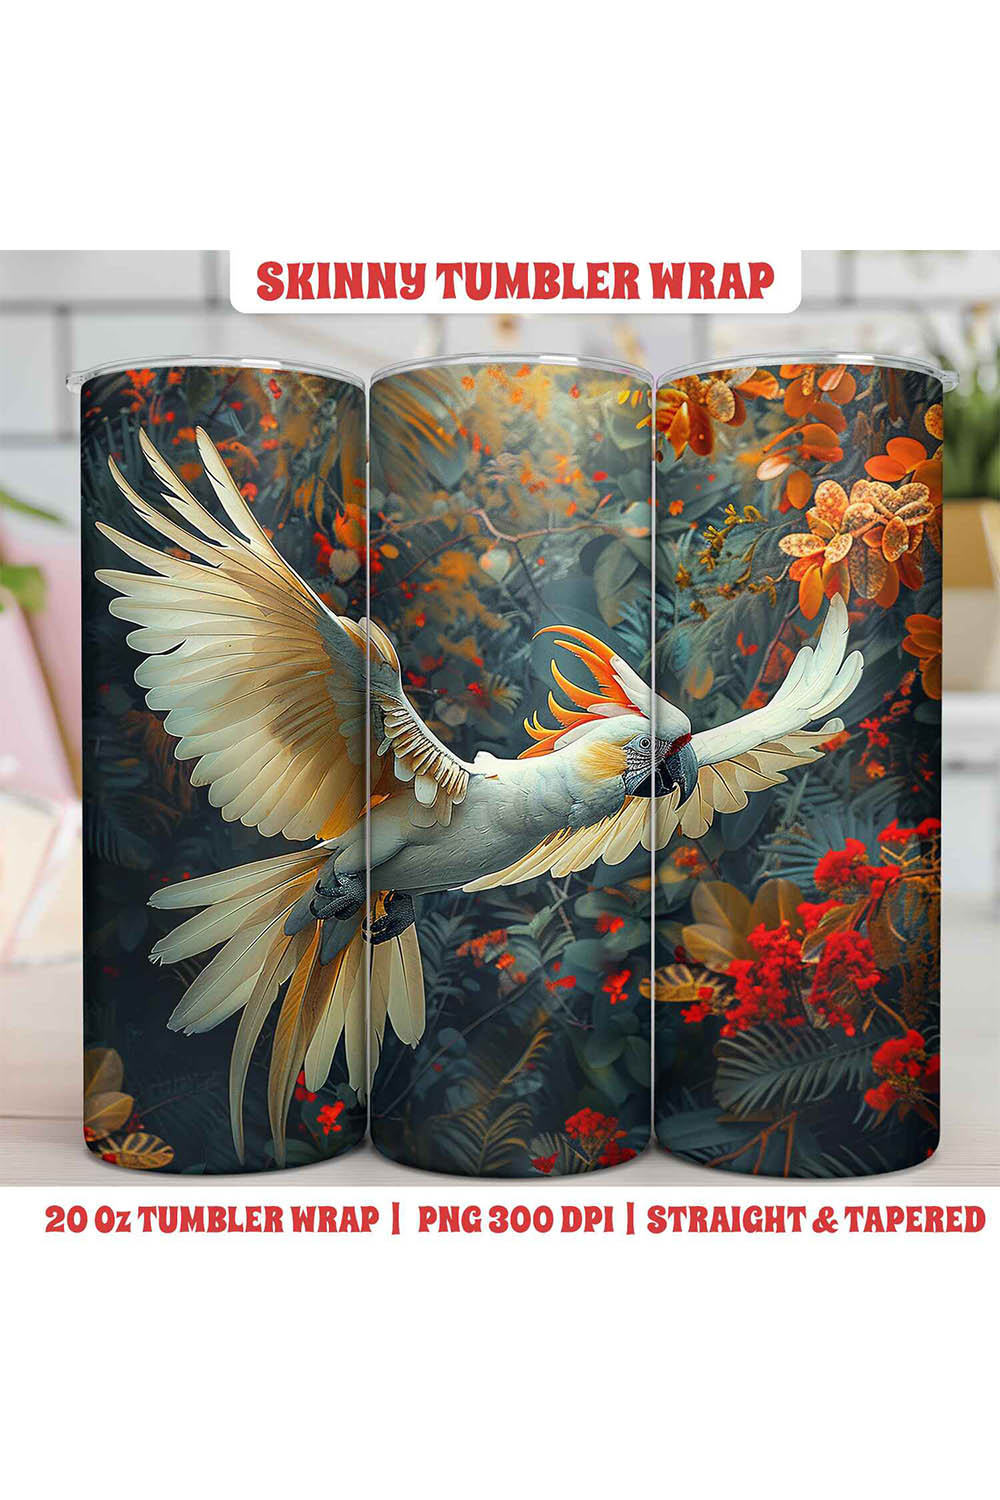 Birds Tumbler Wrap | Sublimation pinterest preview image.